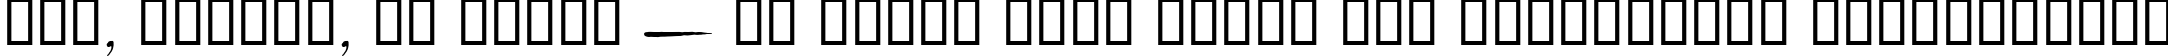 Пример написания шрифтом Chiller текста на украинском